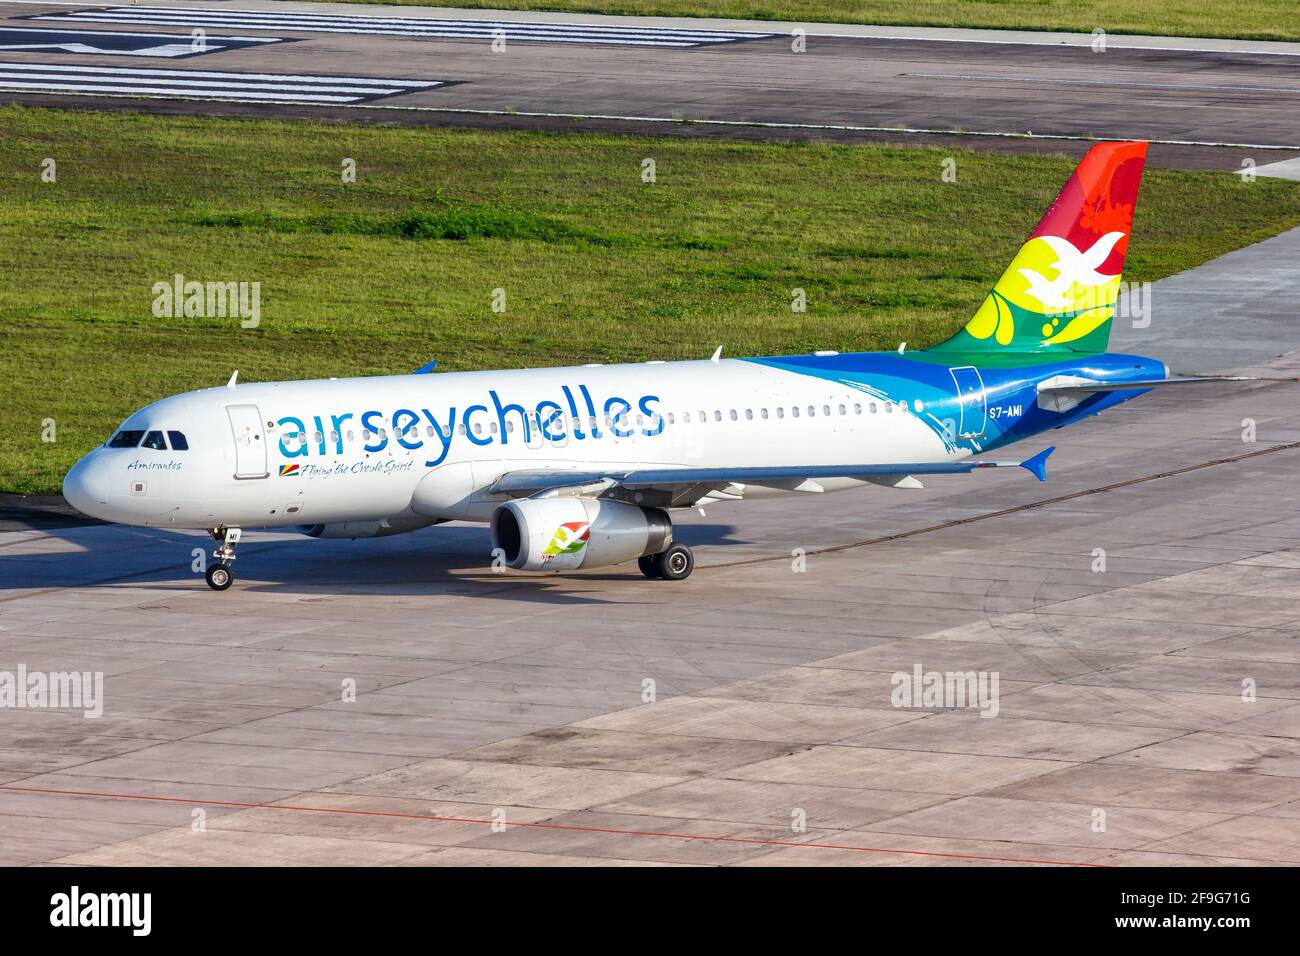 Mahé, Seychelles - 25 novembre 2017 : avion Airbus A320 d'Air Seychelles à l'aéroport international des Seychelles (SEZ) aux Seychelles. Airbus est un EUR Banque D'Images